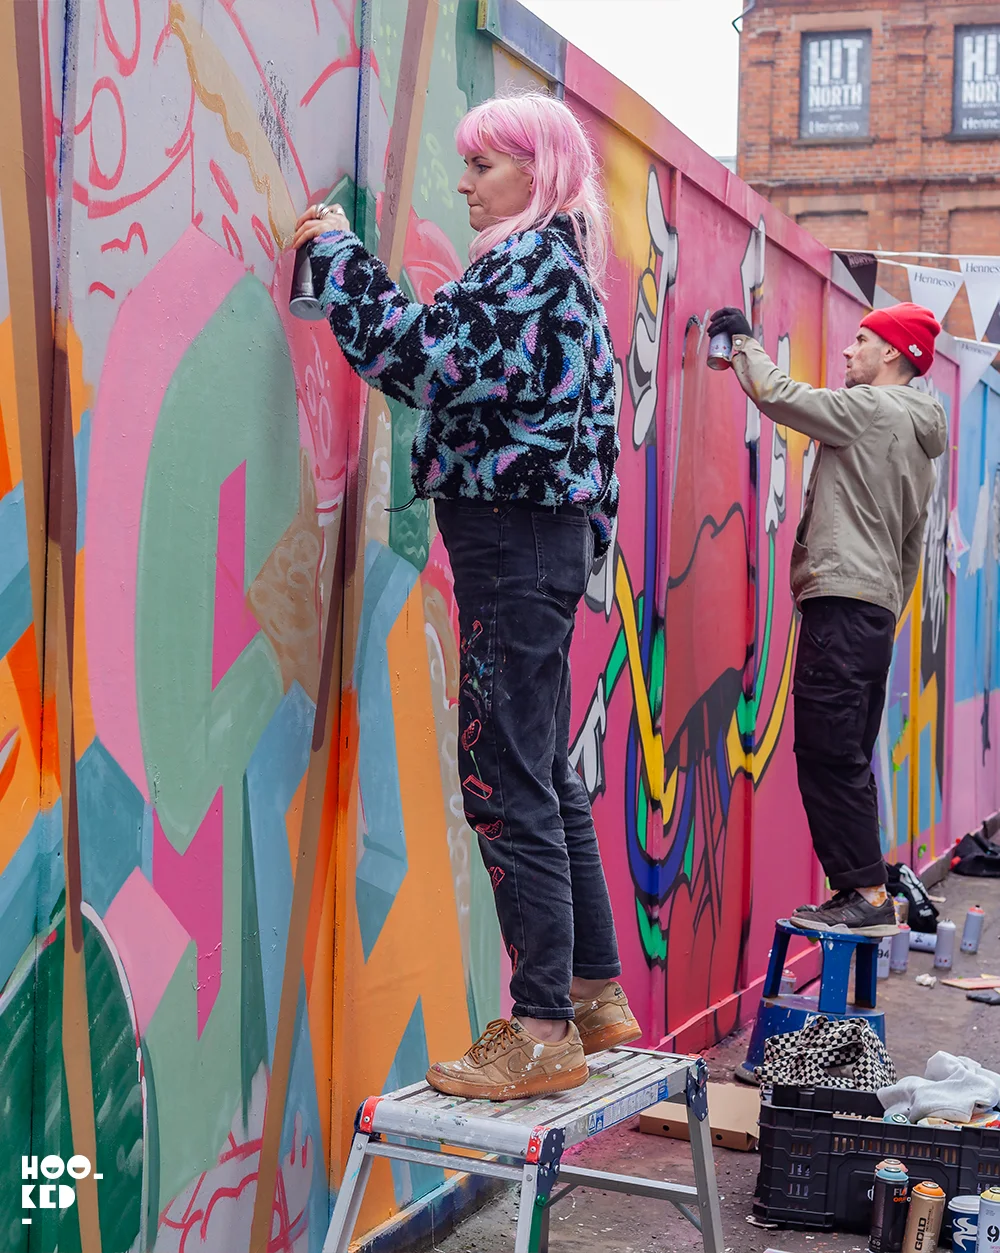 Belfast Street Art mural for Hit The North festival, artist Zippy at work